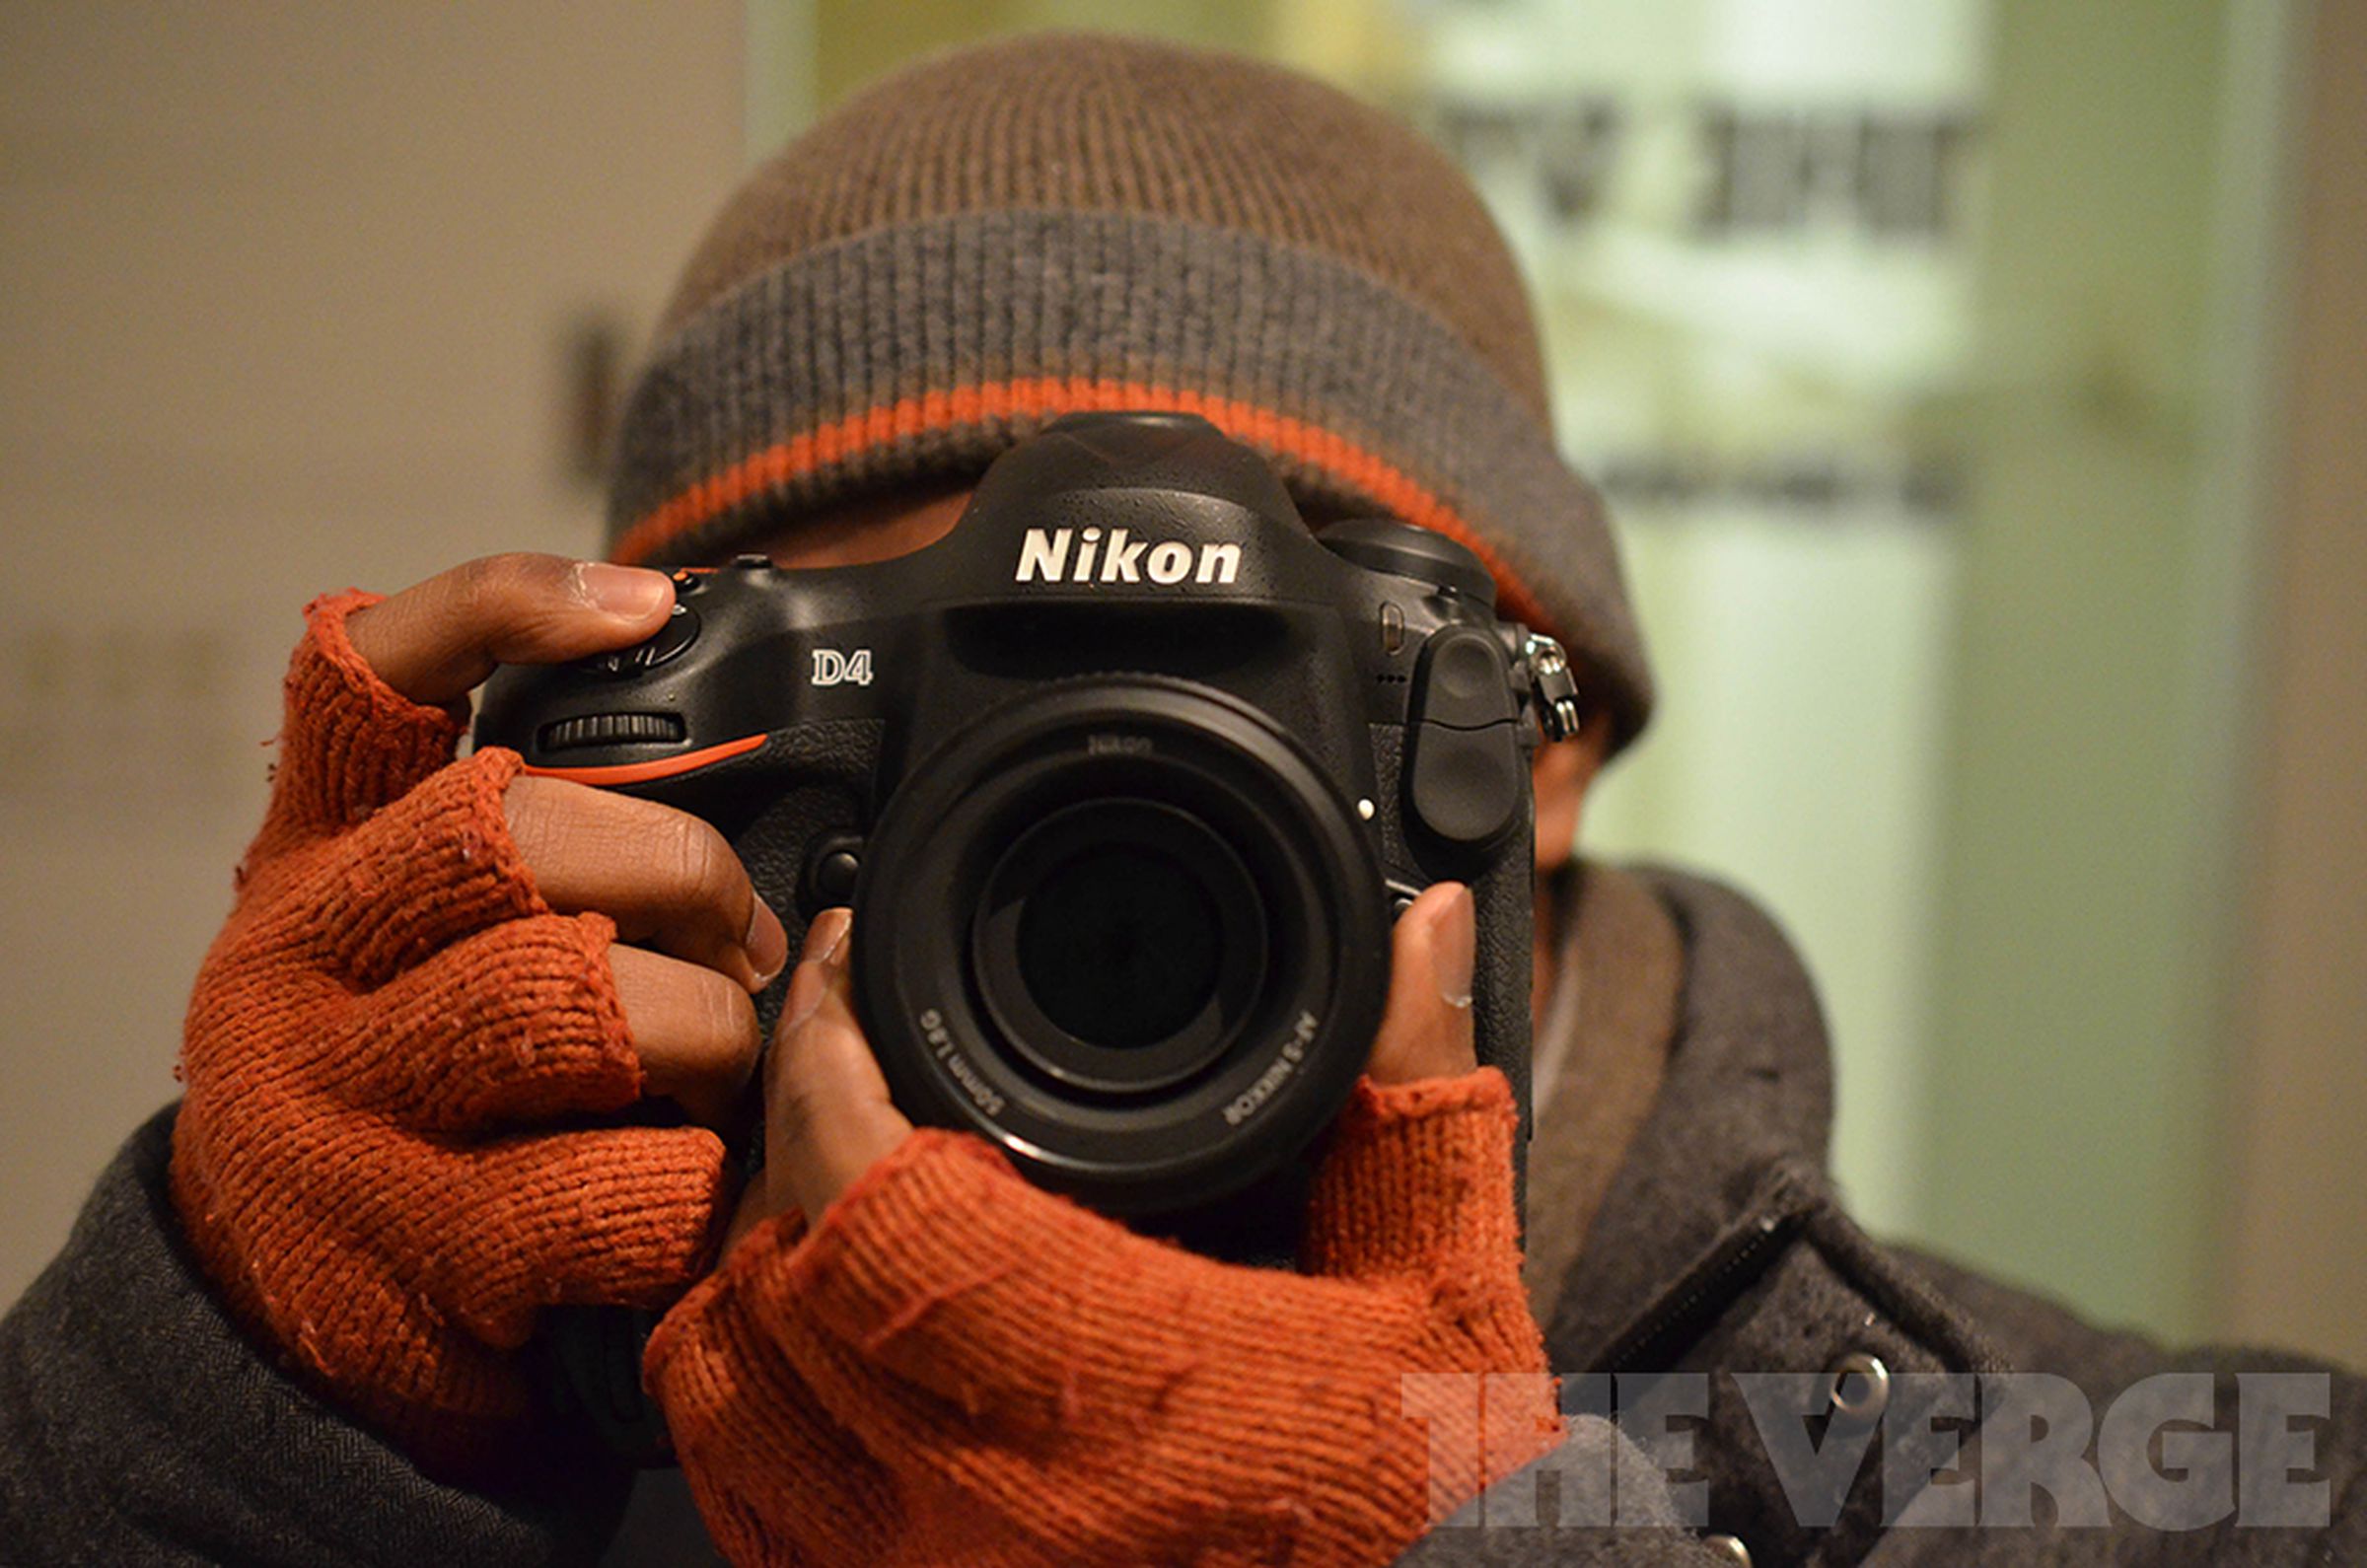 Nikon D4 preview pictures